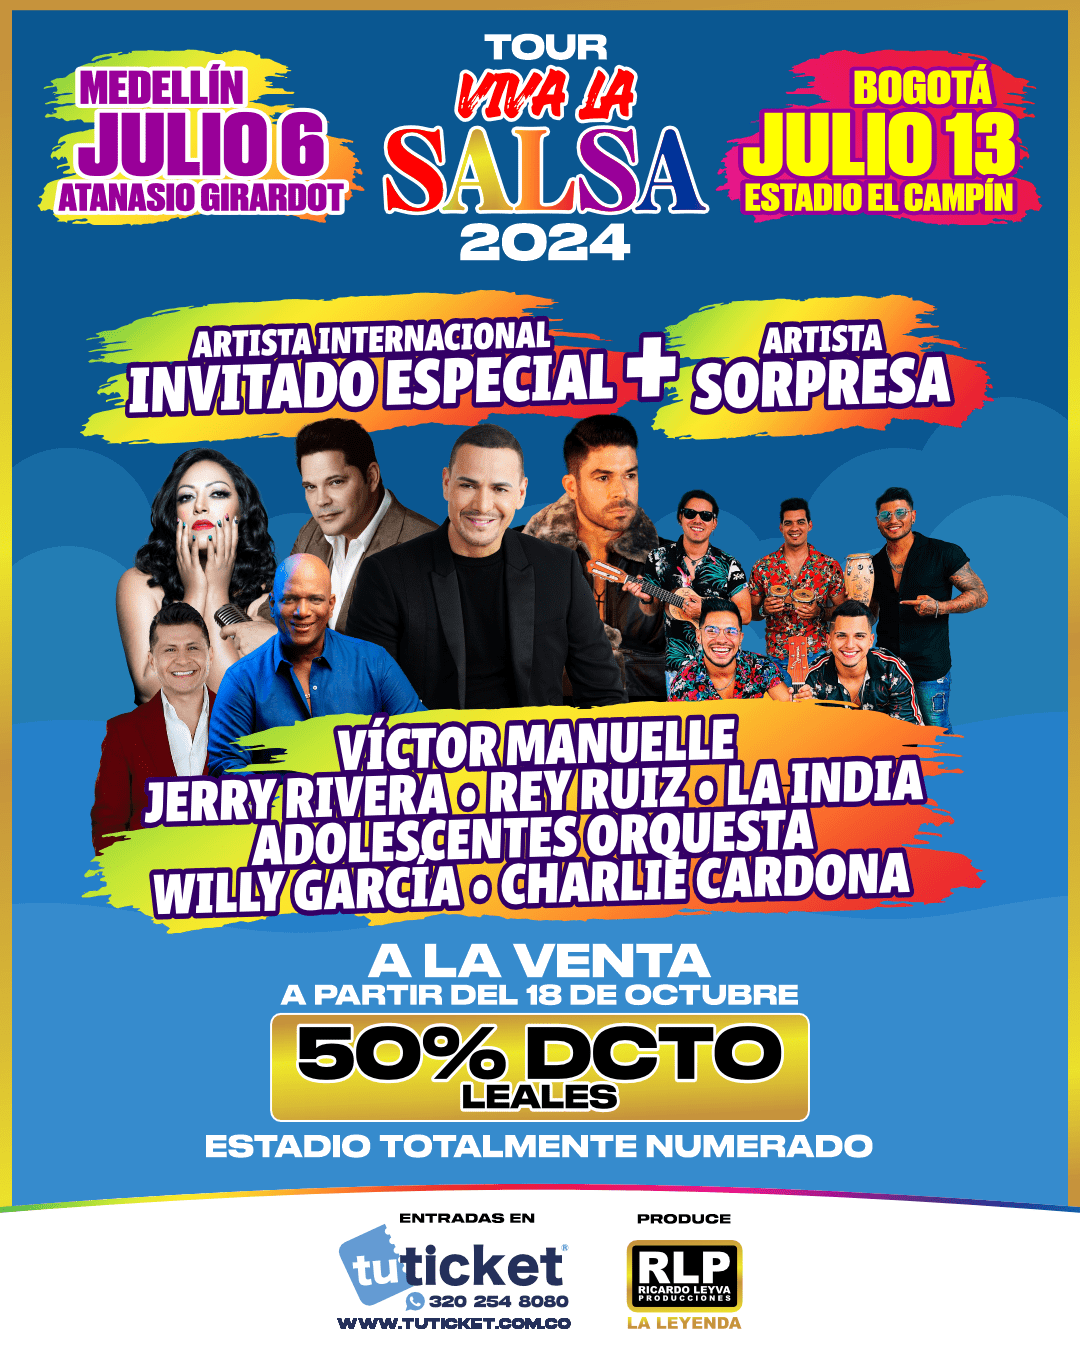 Tour Viva la Salsa 2024 Primeras Fechas Confirmadas en Bogotá y Medellín RevistaDC Revista